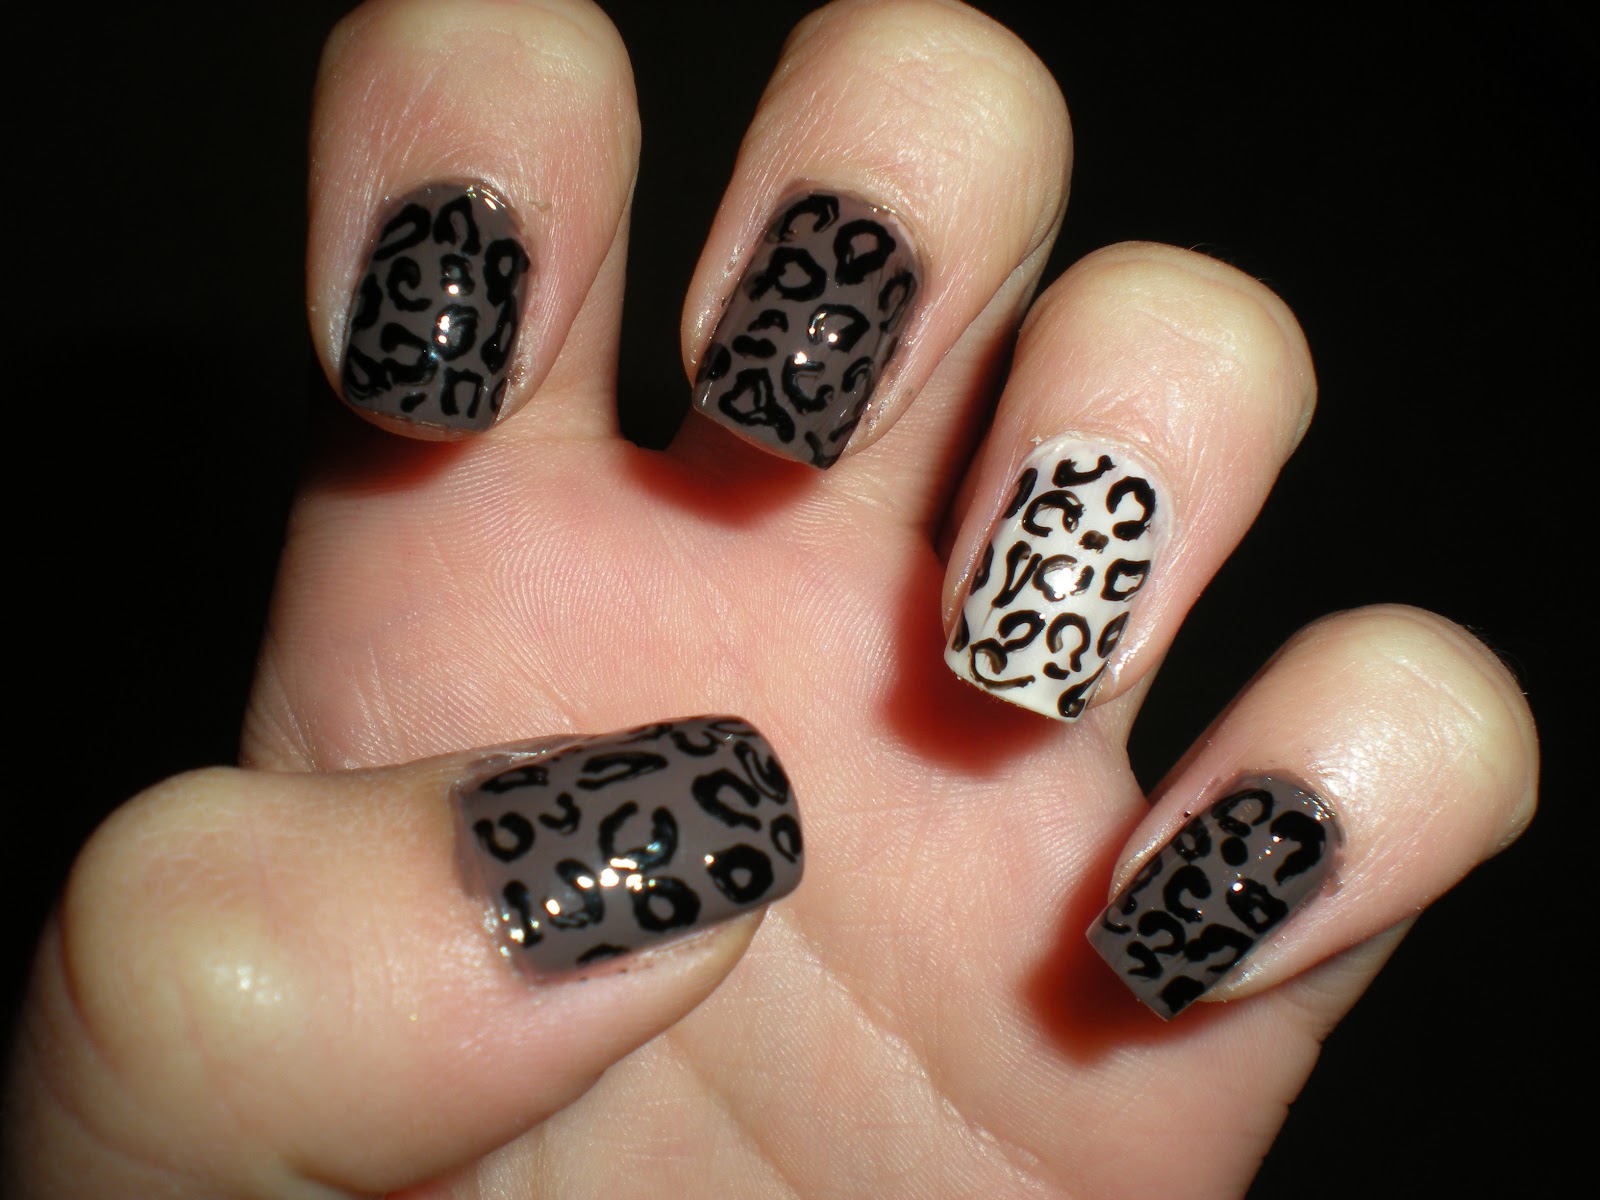 4. Cheetah Print Nail Design for Short Nails - wide 1